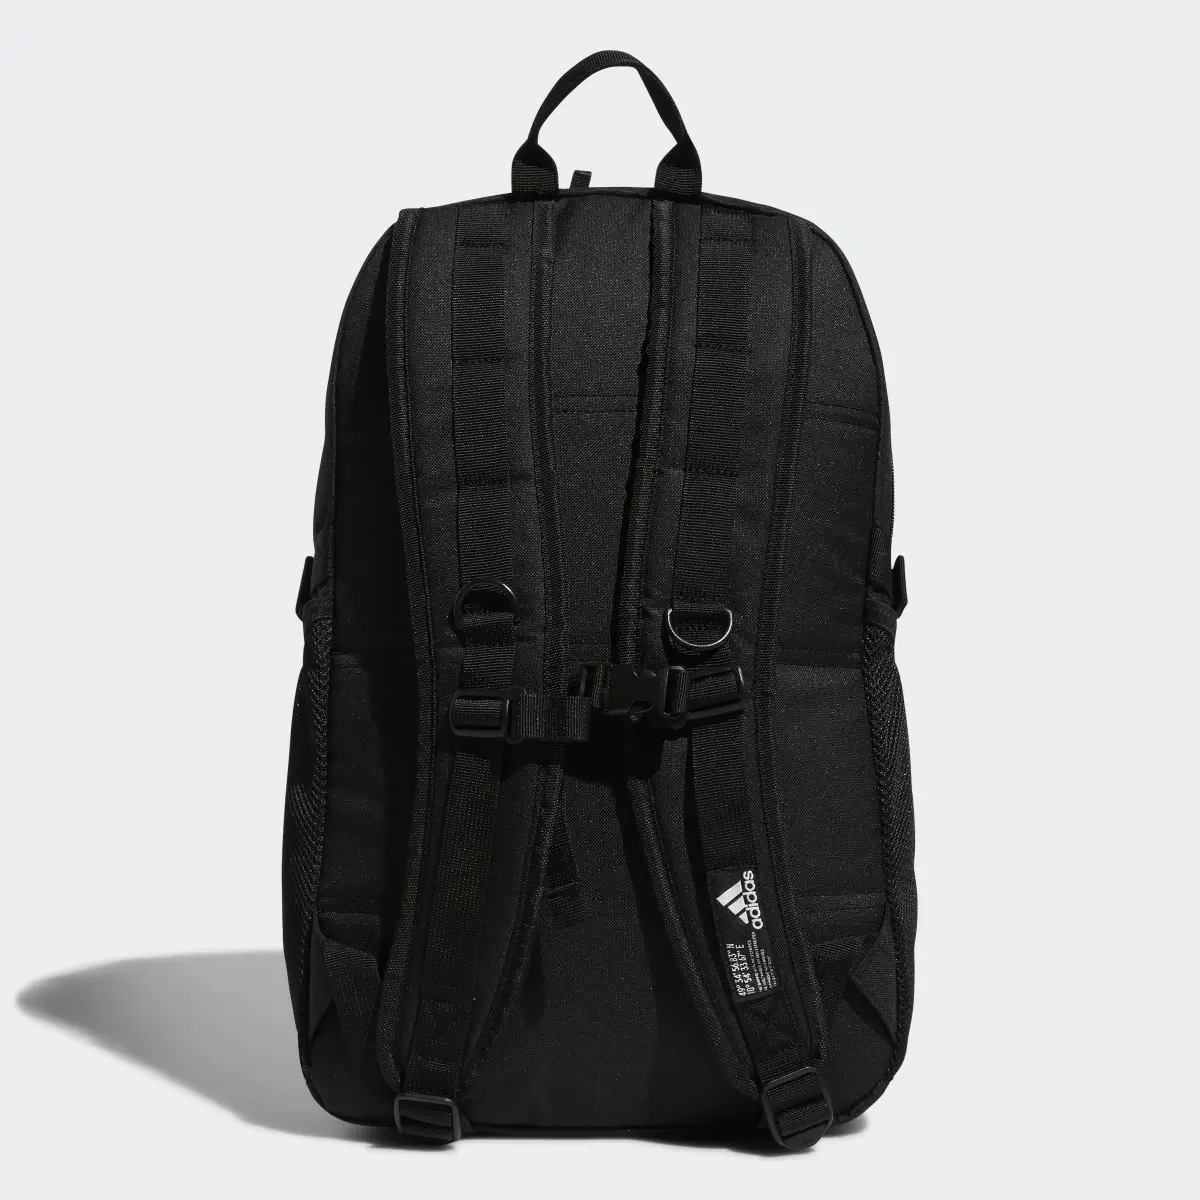 Adidas Energy Backpack. 3